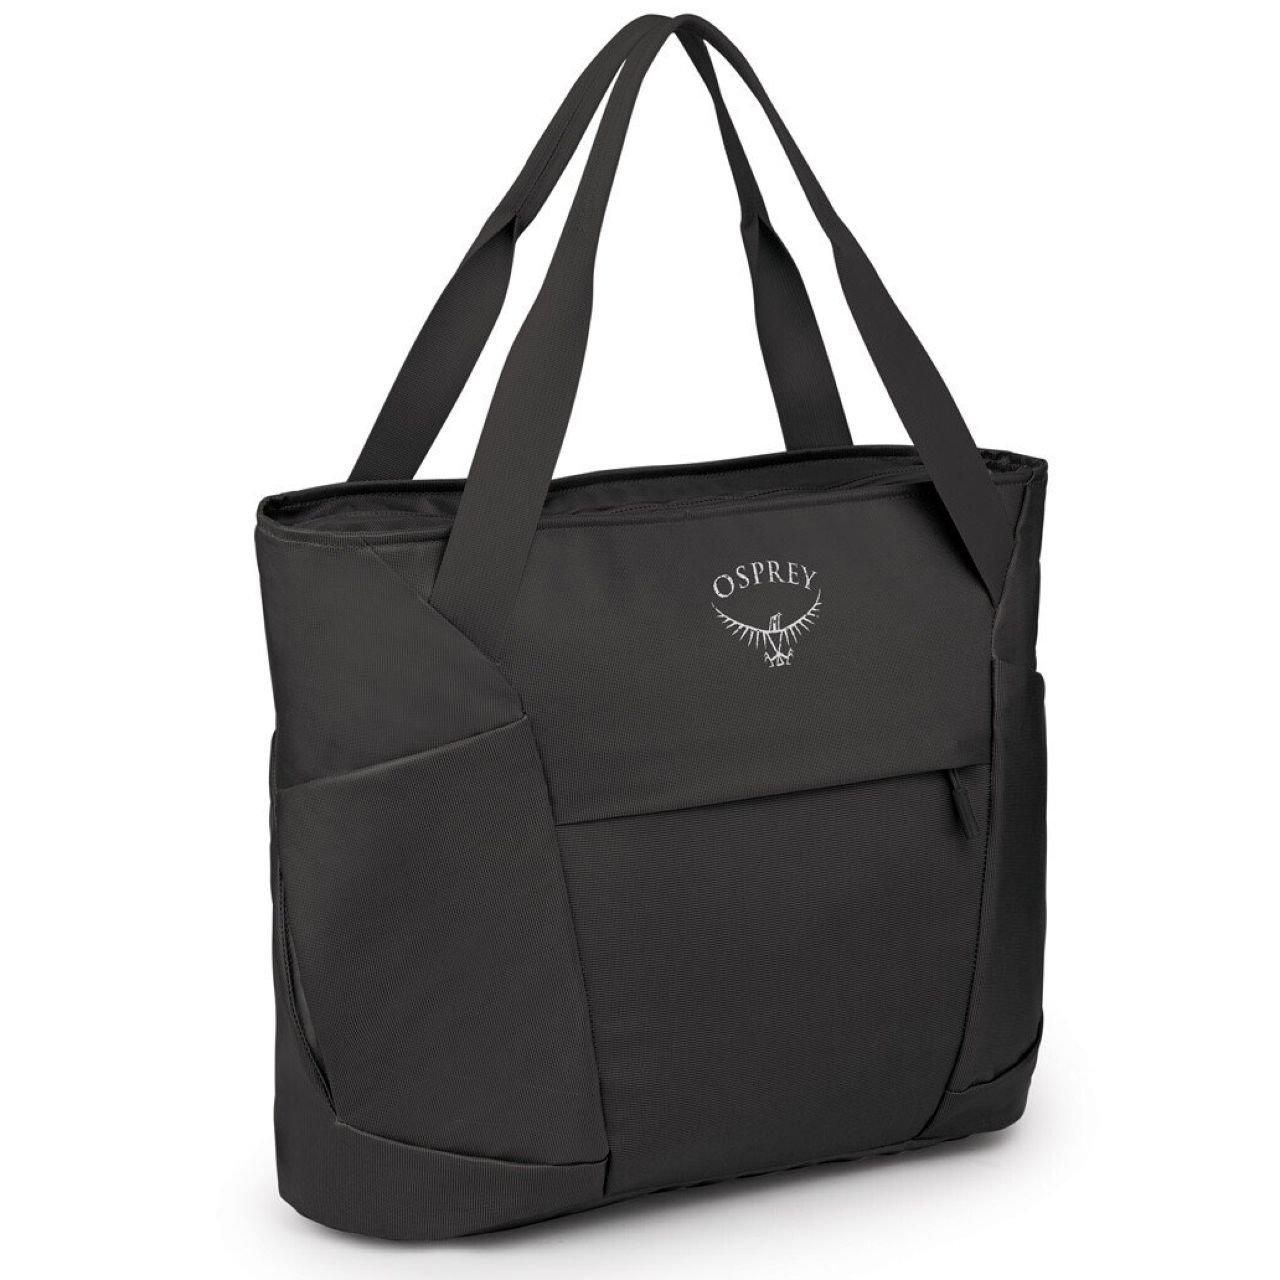 Osprey Soft Leather Brown Shoulder / Tote Hobo Lined Bag With Details